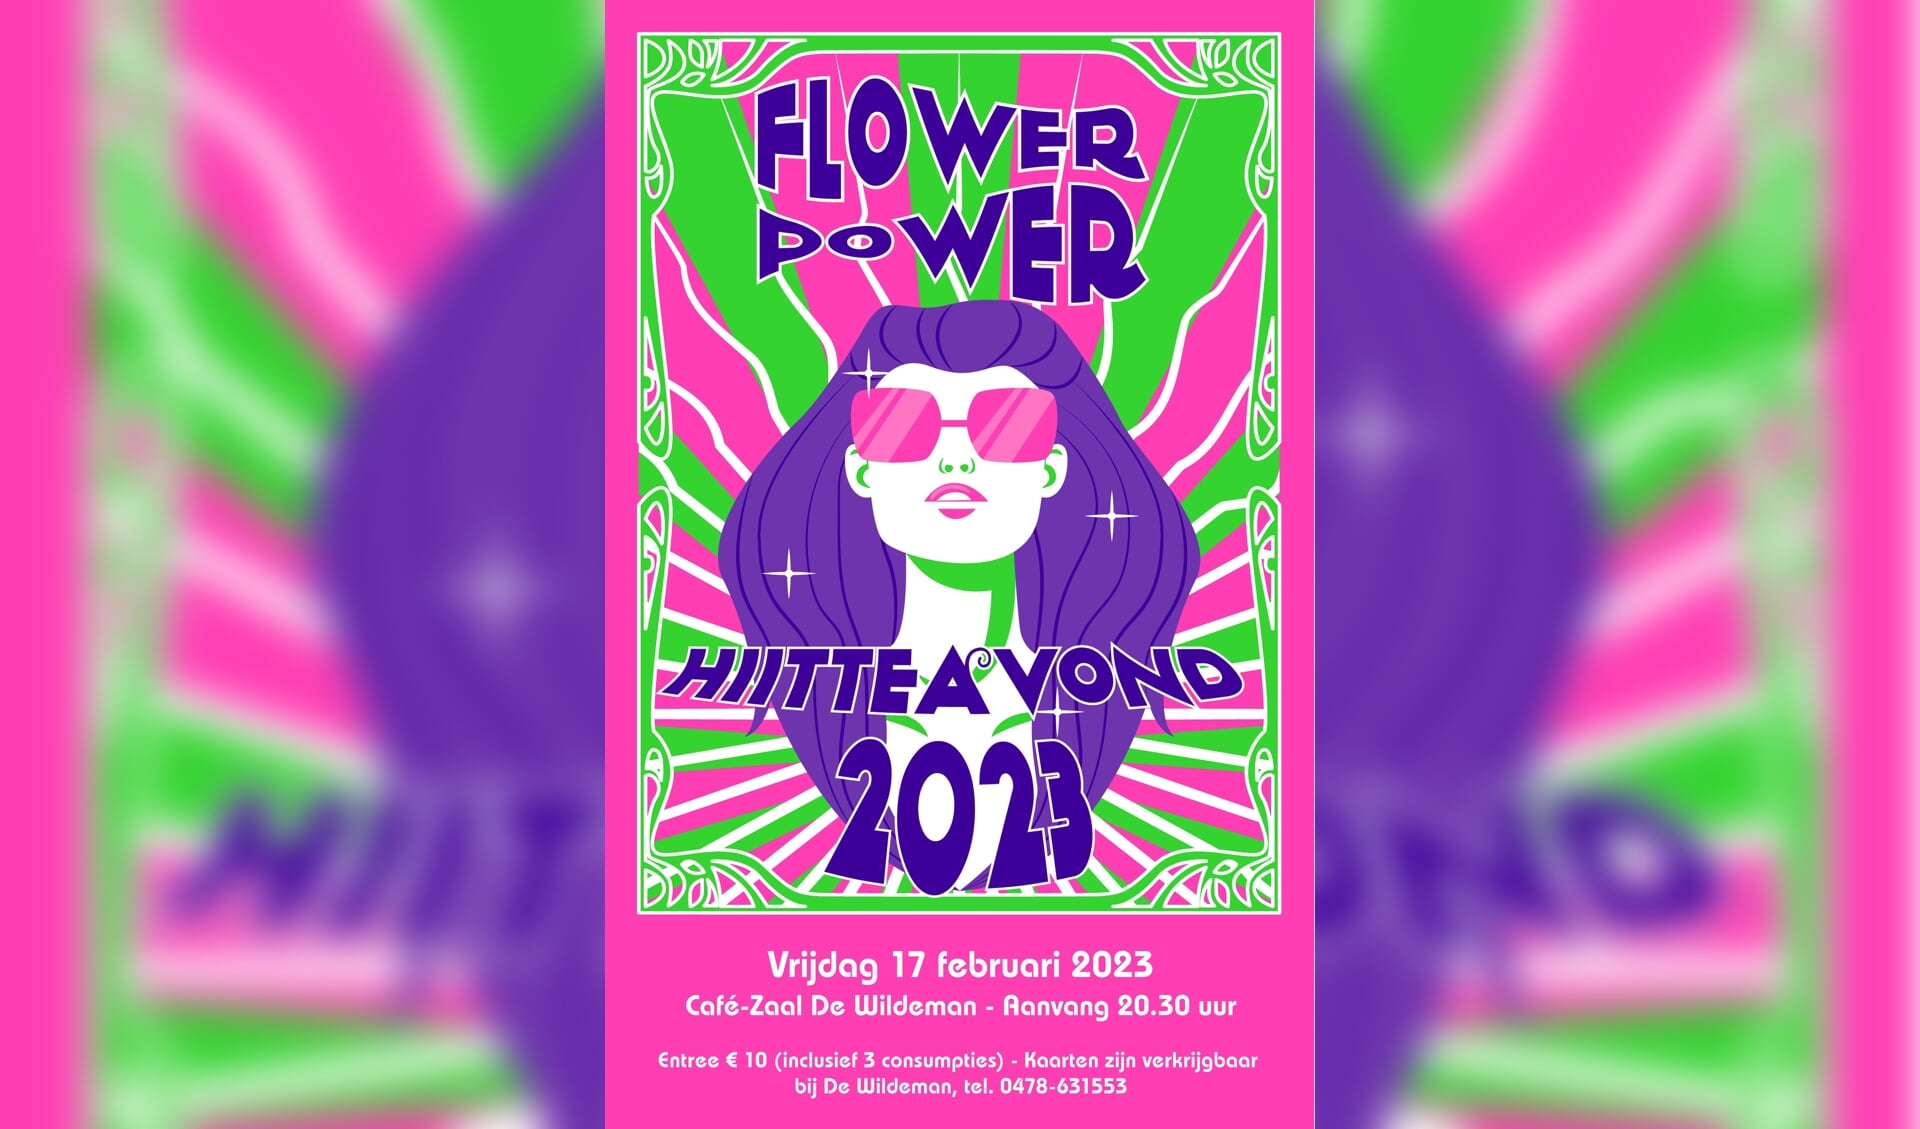 Flowerpower is het thema van de Hitteavond. 